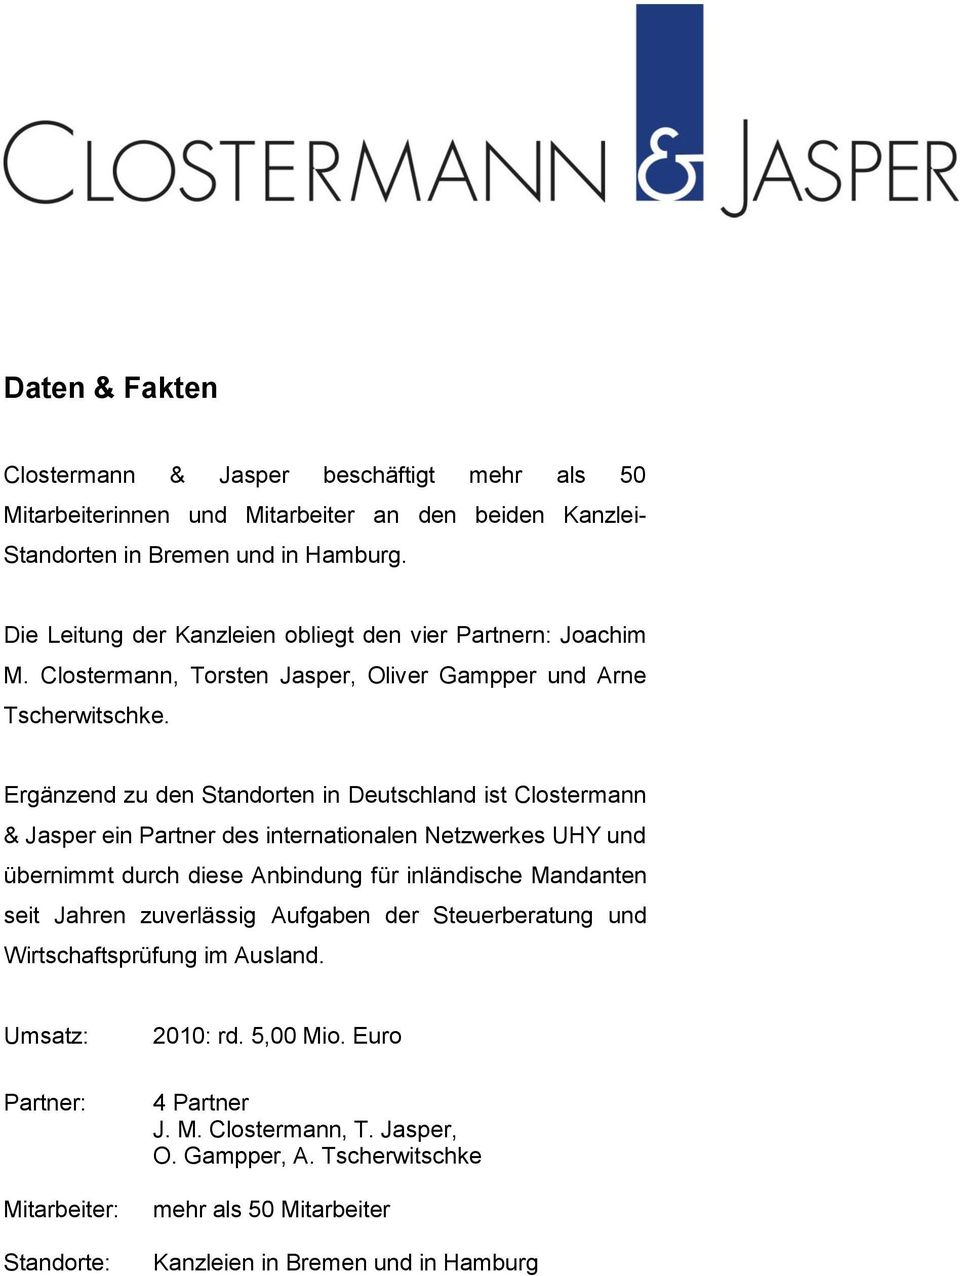 Ergänzend zu den Standorten in Deutschland ist Clostermann & Jasper ein Partner des internationalen Netzwerkes UHY und übernimmt durch diese Anbindung für inländische Mandanten seit